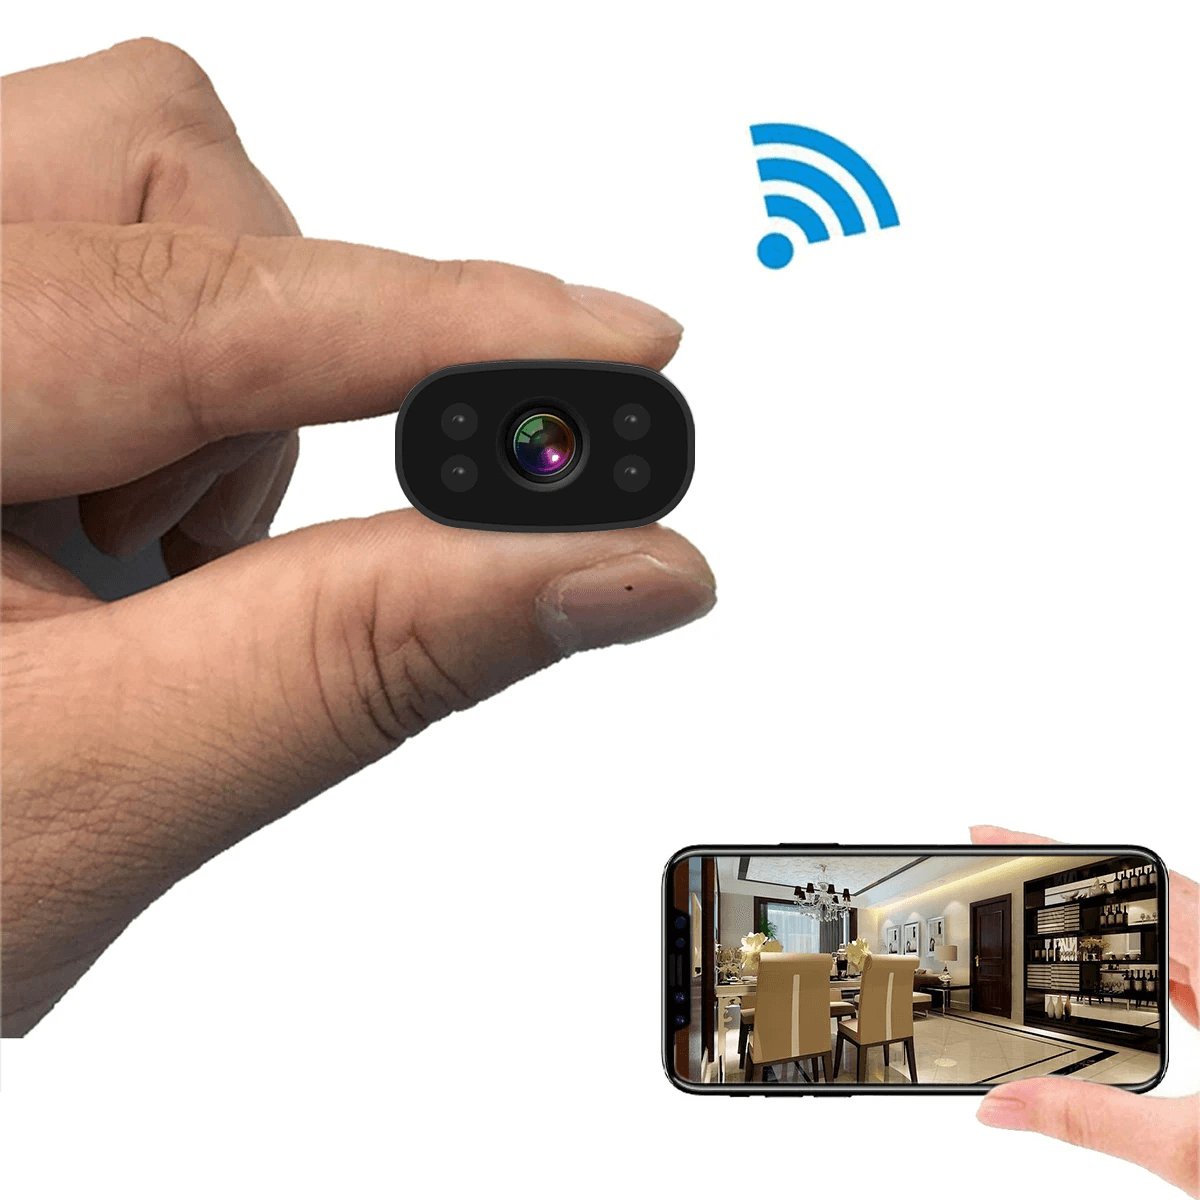 HD WiFi Mini Security Surveillance Camera